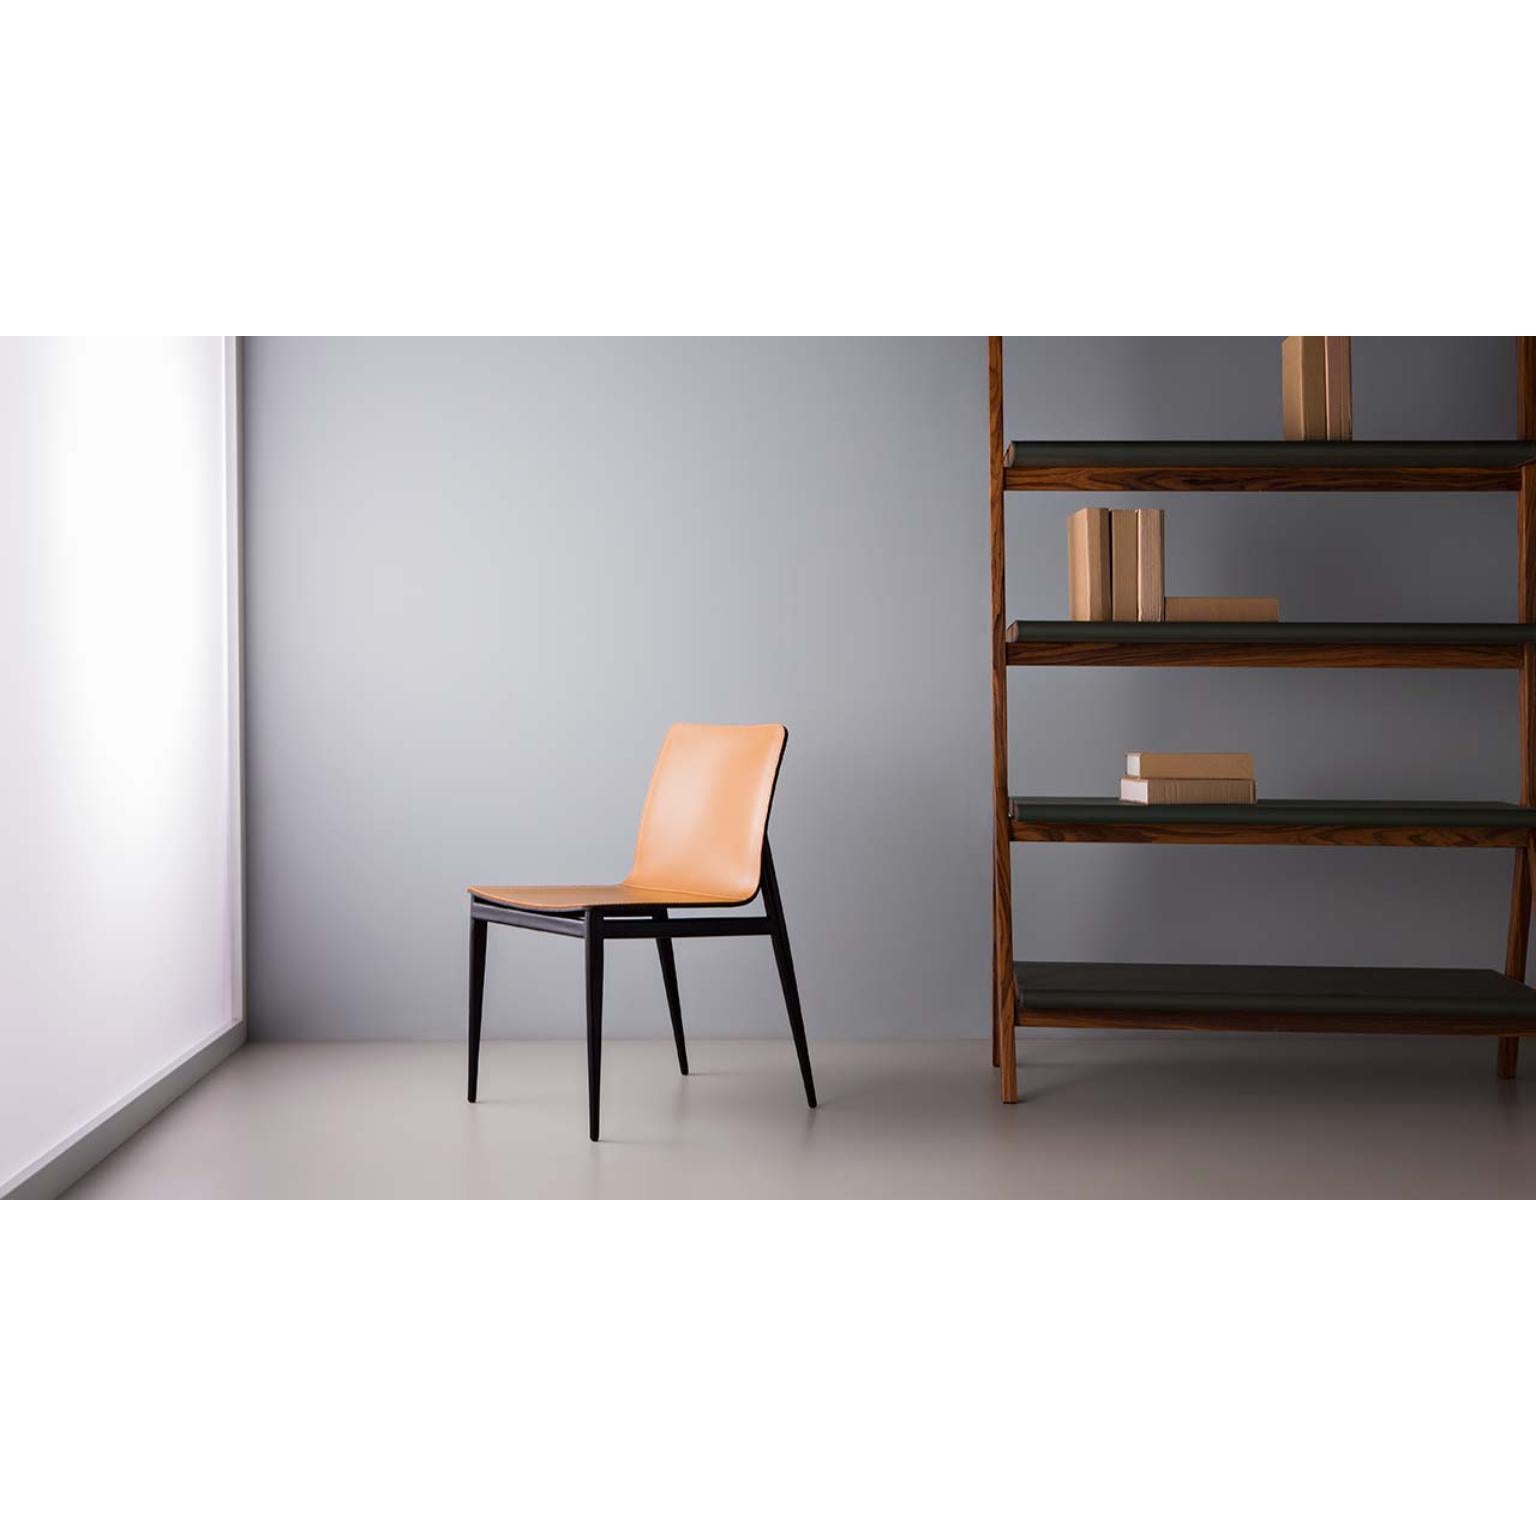 Full Chair von Doimo Brasil
Abmessungen: B 50 x T 59 x H 80 cm 
MATERIALIEN: Metall, Naturleder.


Mit der Absicht, guten Geschmack und Persönlichkeit zu vermitteln, entschlüsselt Doimo Trends und folgt der Entwicklung des Menschen und seines Raums.